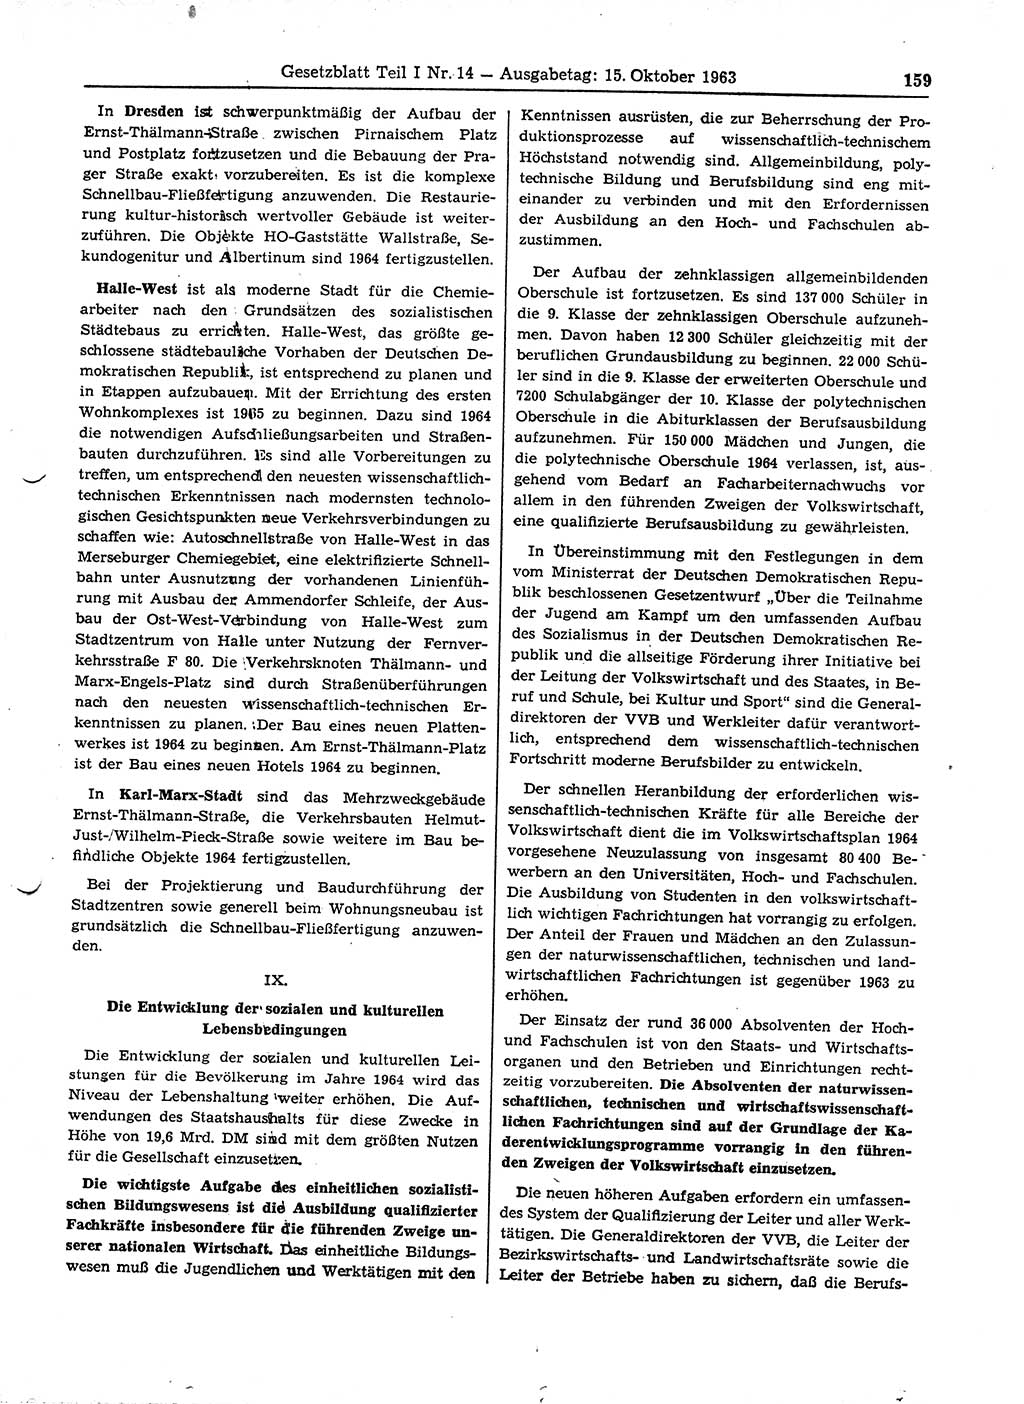 Gesetzblatt (GBl.) der Deutschen Demokratischen Republik (DDR) Teil Ⅰ 1963, Seite 159 (GBl. DDR Ⅰ 1963, S. 159)